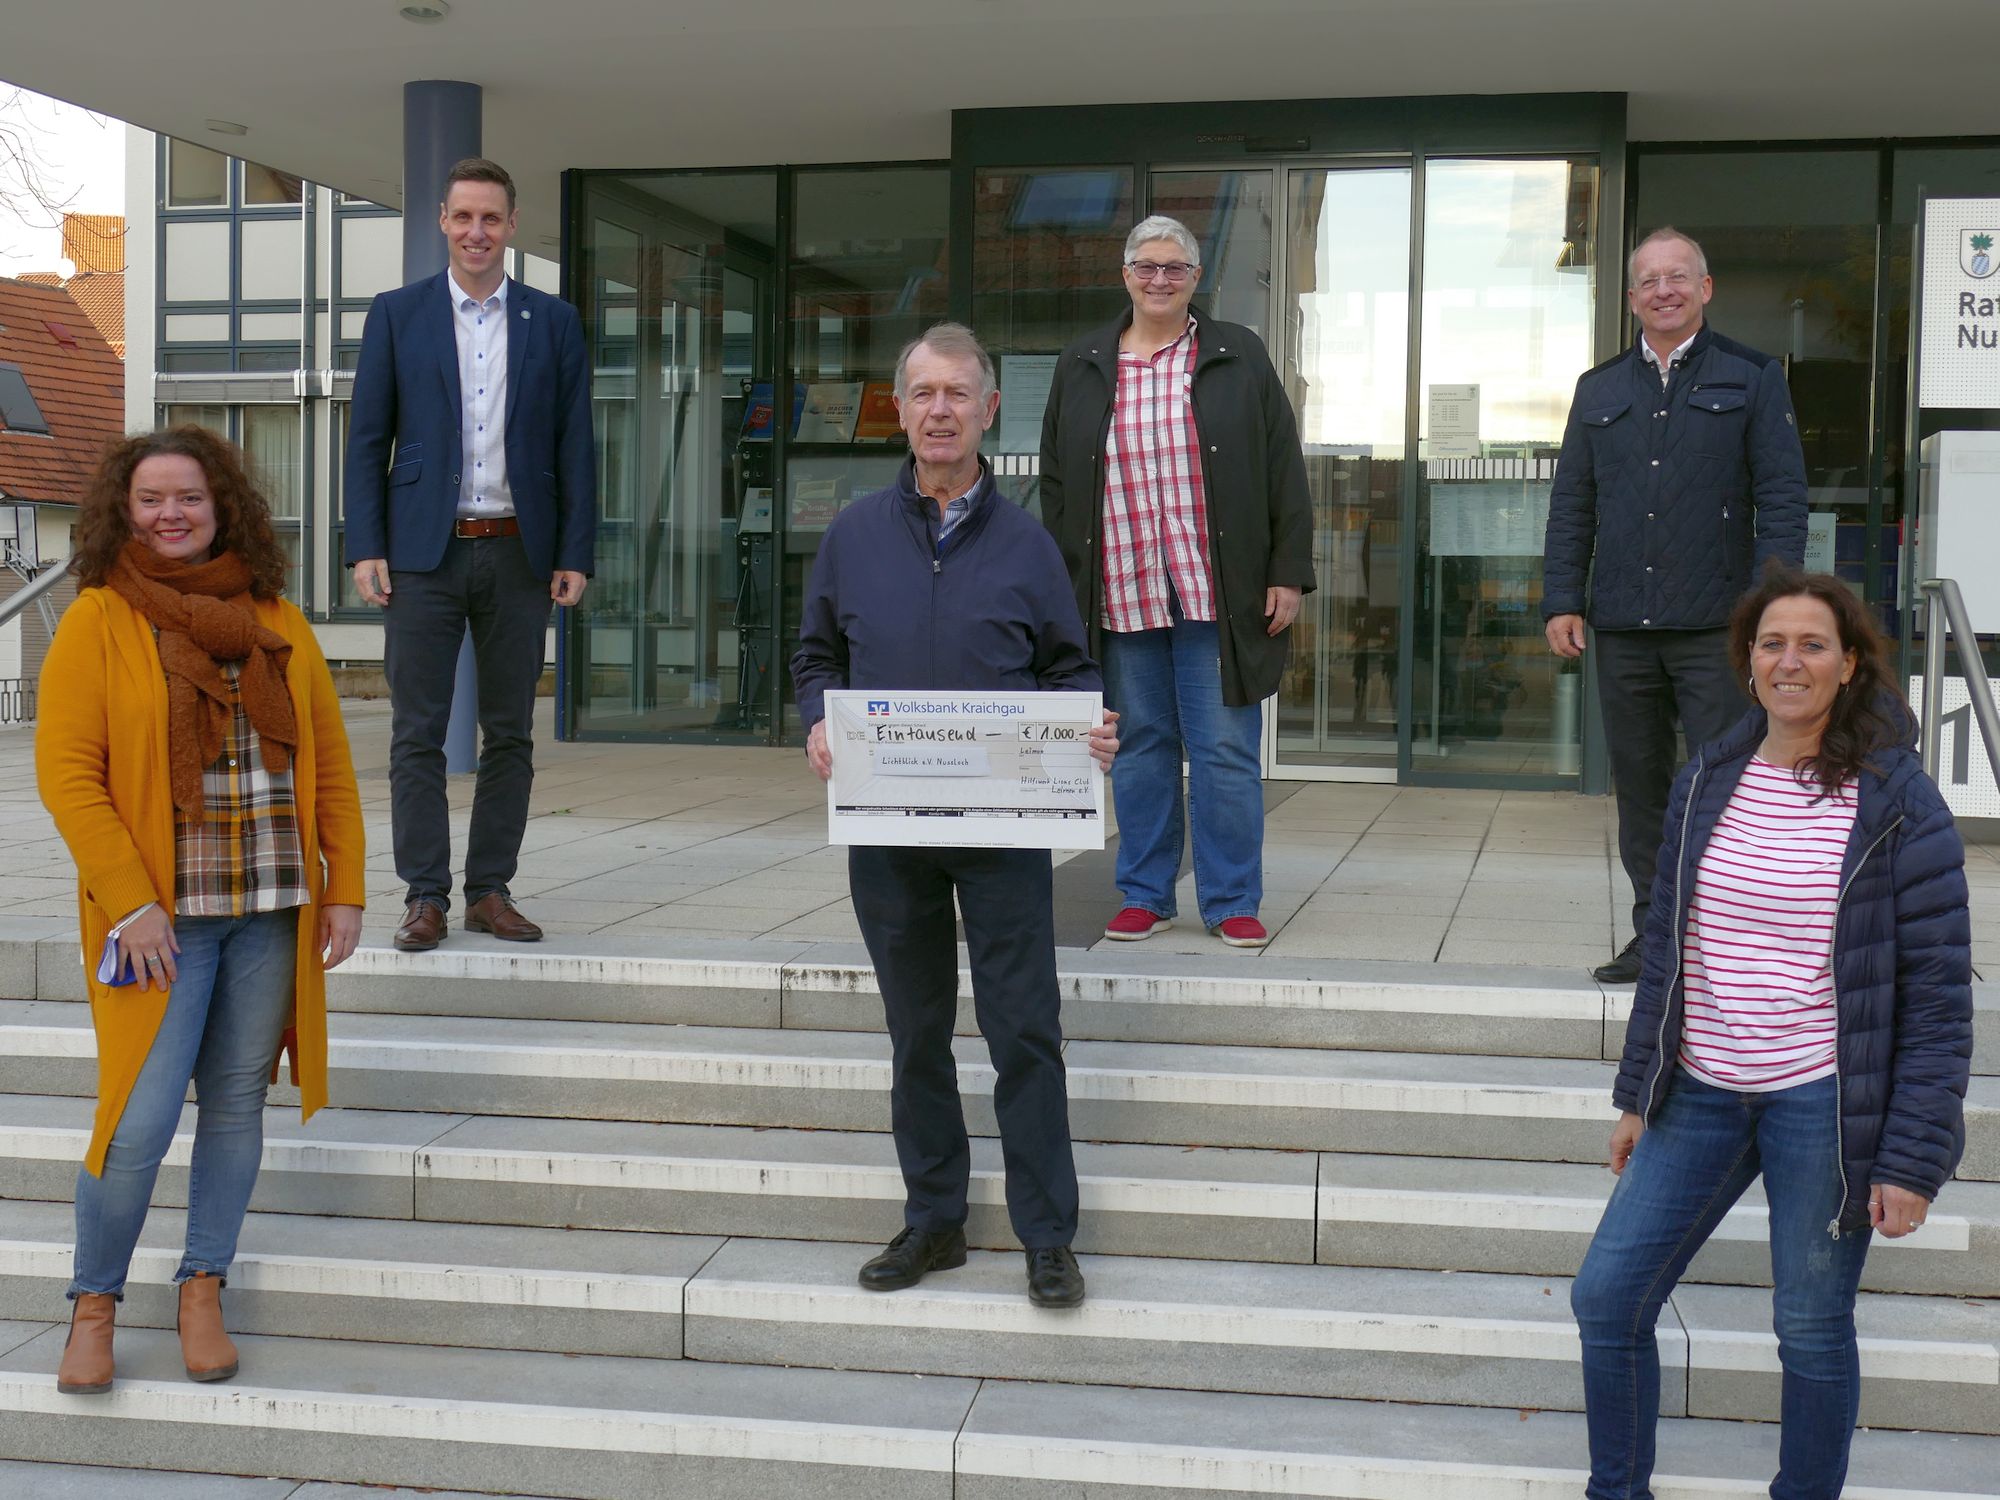 Lions Club Leimen spendet 1.000 € an den Nußlocher Verein Lichtblick